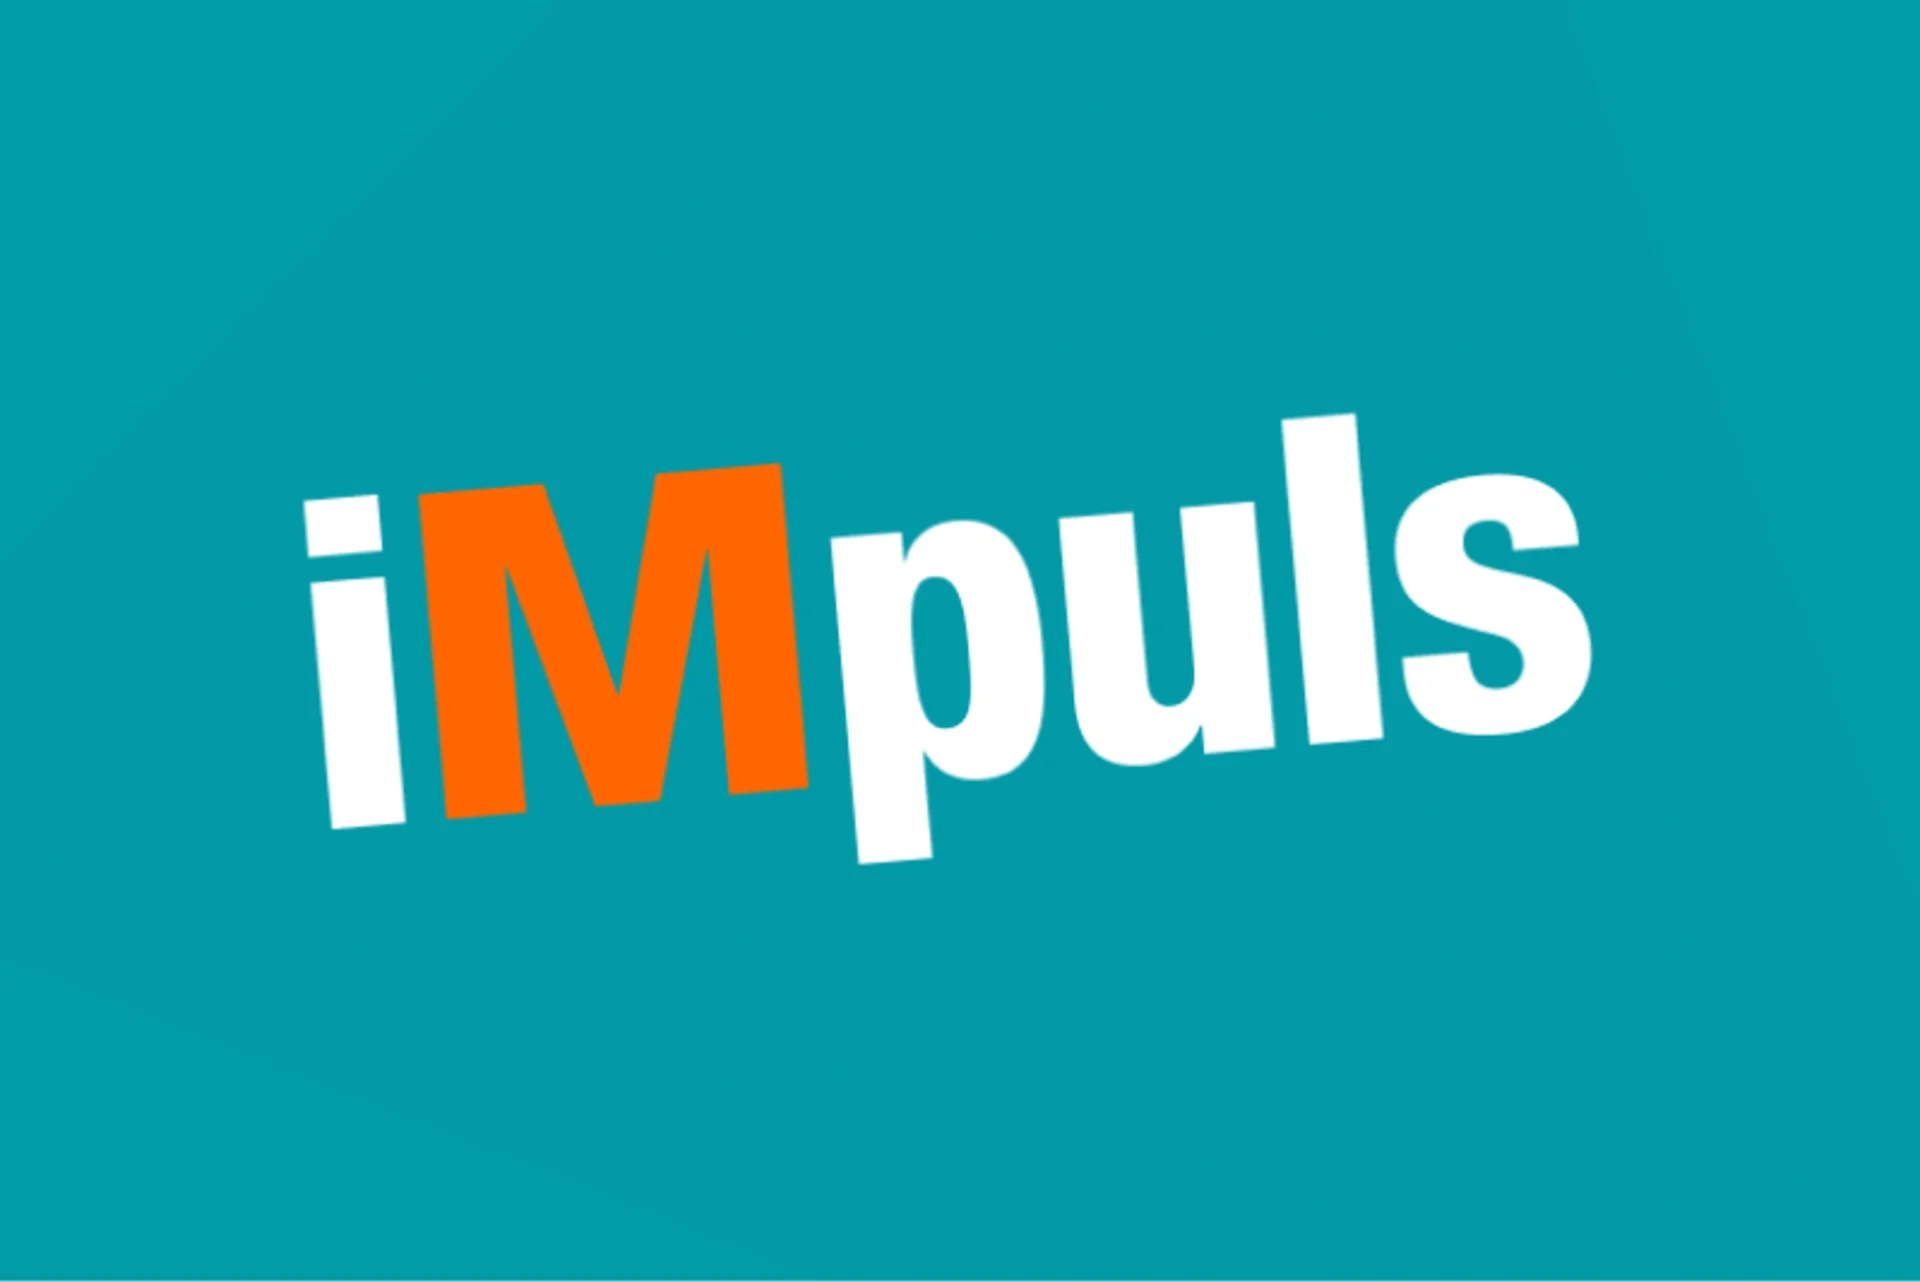 Logo iMpuls auf türkisem Hintergrund.